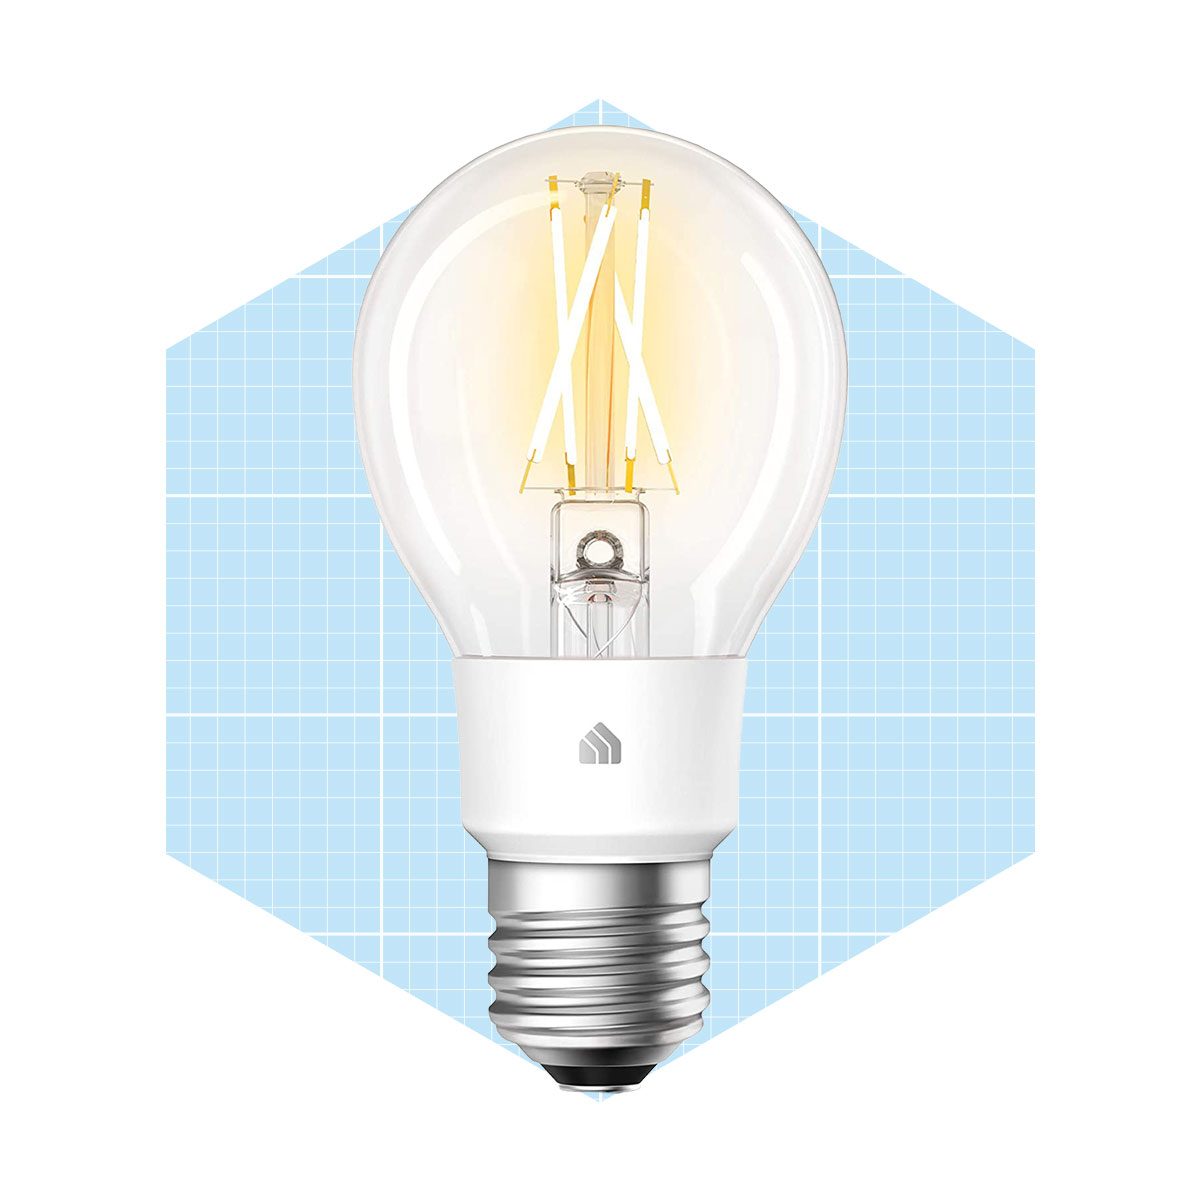 Kasa Smart Wi Fi Led Bulb Filament A19 E26 Smart Light Bulb